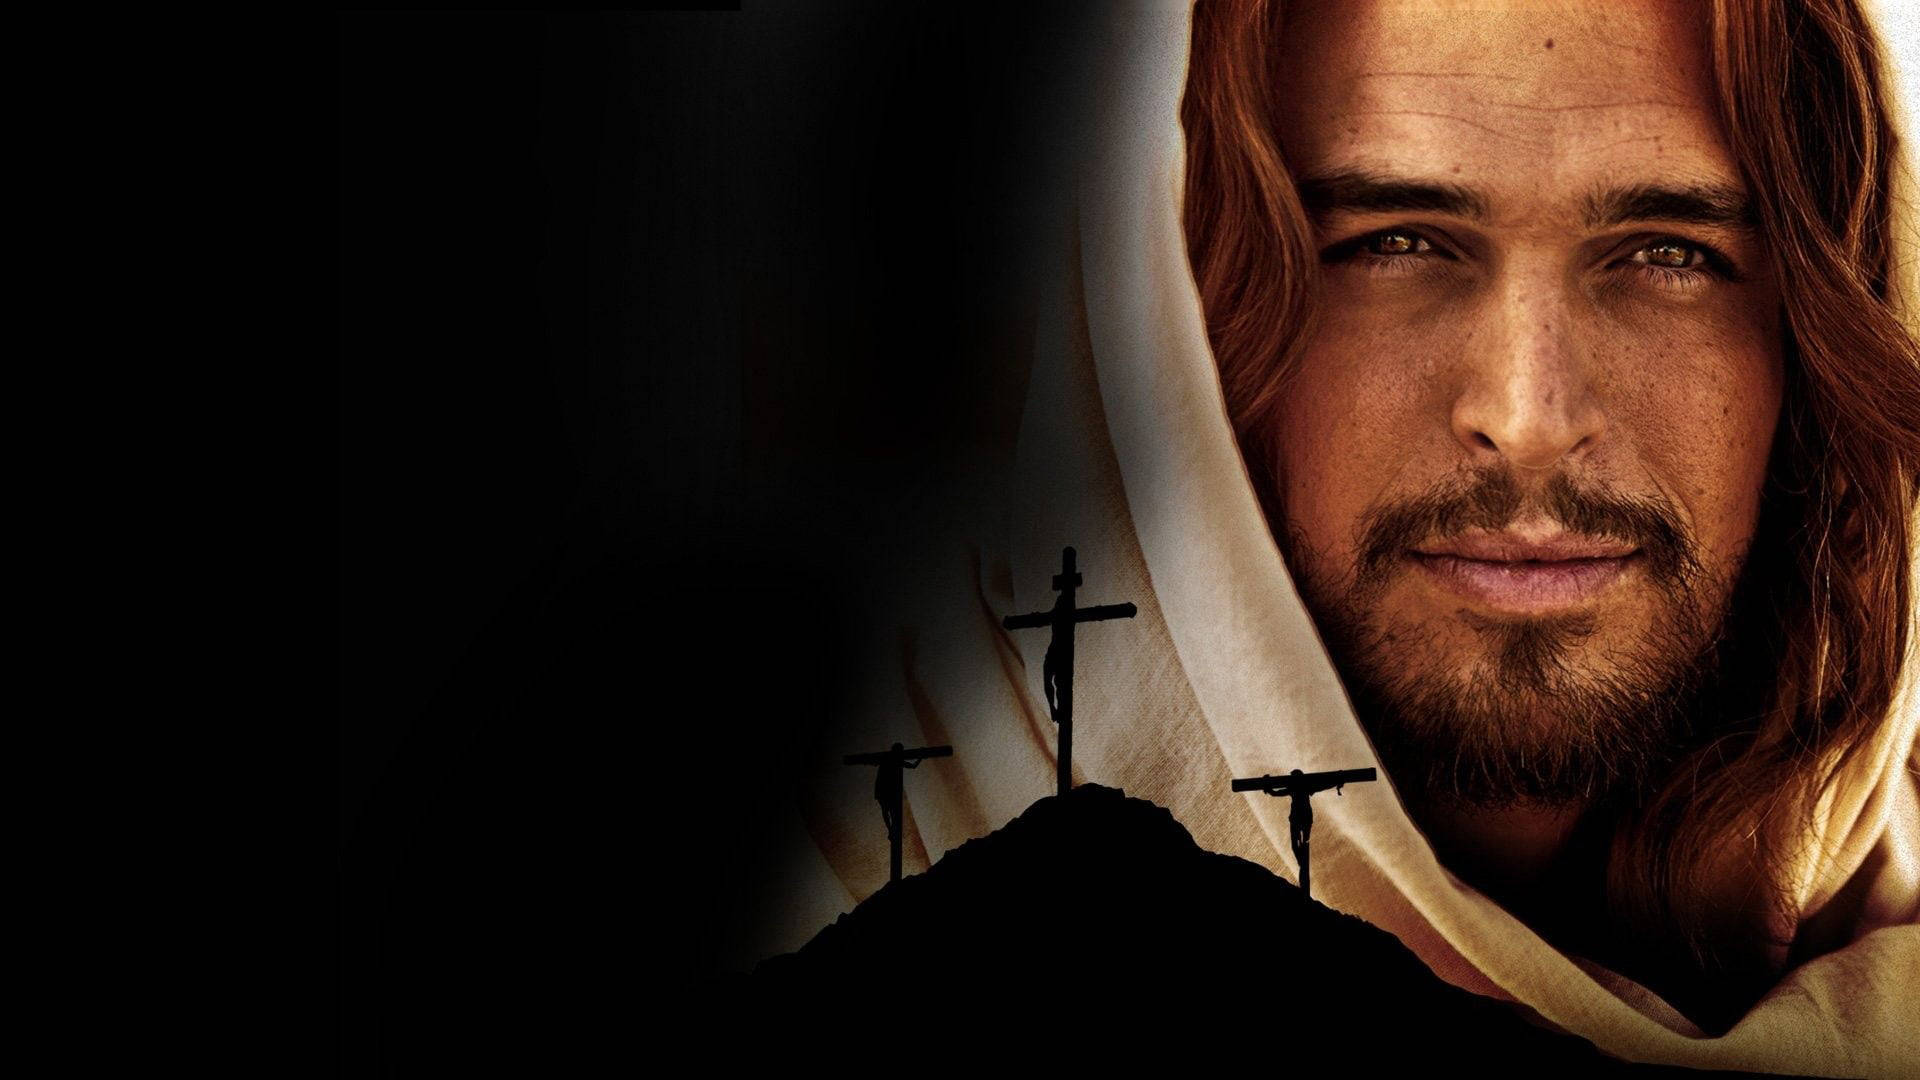 Nærbillede Jesus Desktop Tapet: Se Jesus i nærbillede med dette skræmmende, realistiske tapet. Wallpaper